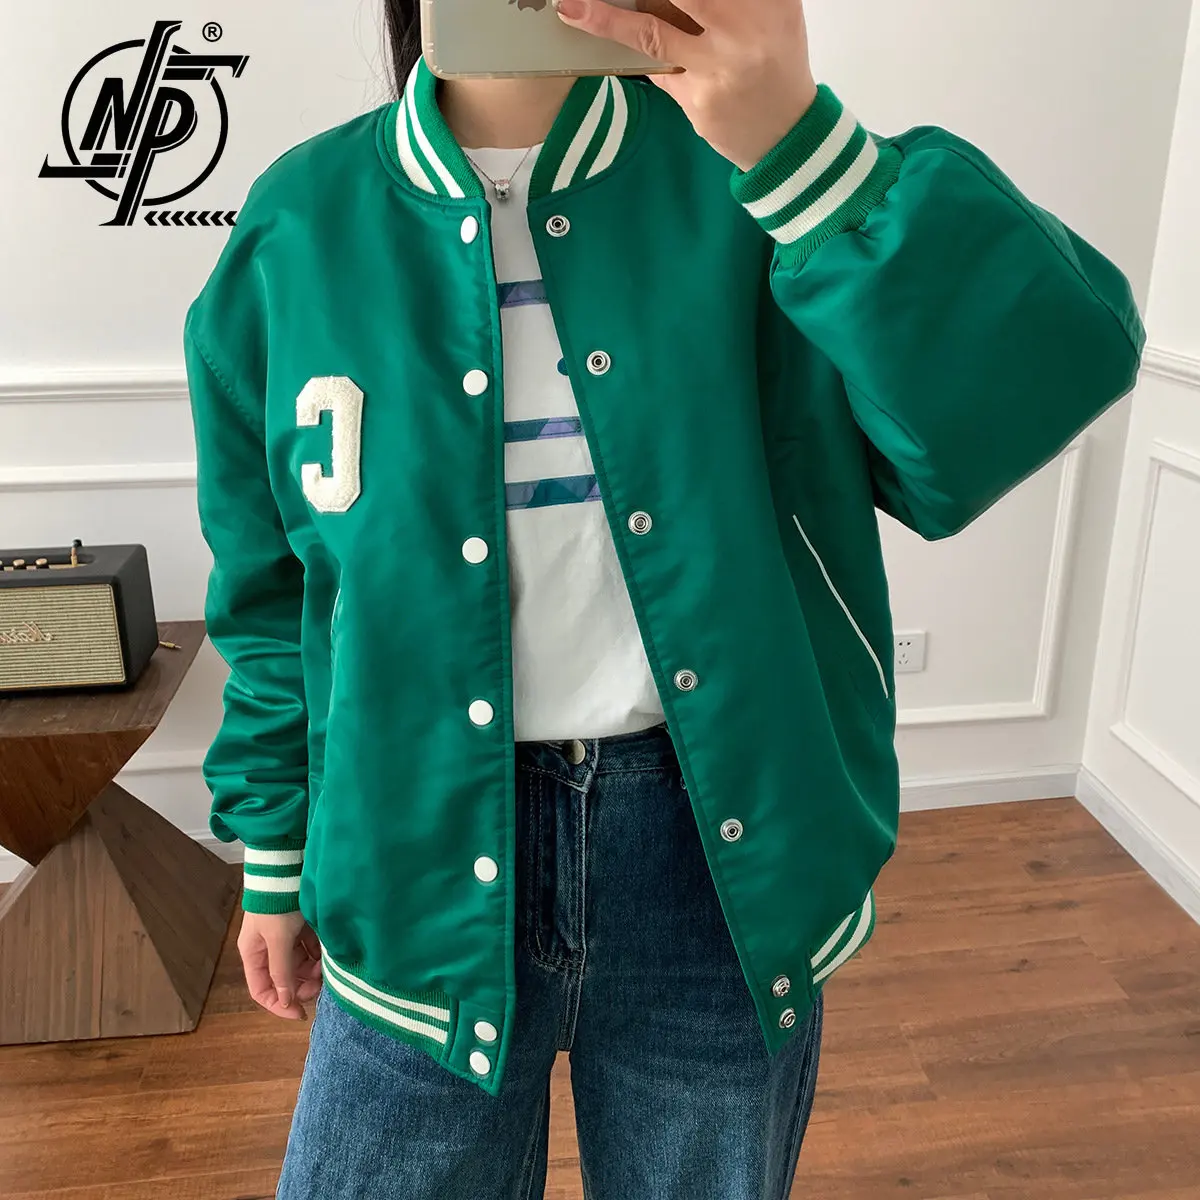 baseball jacket green and